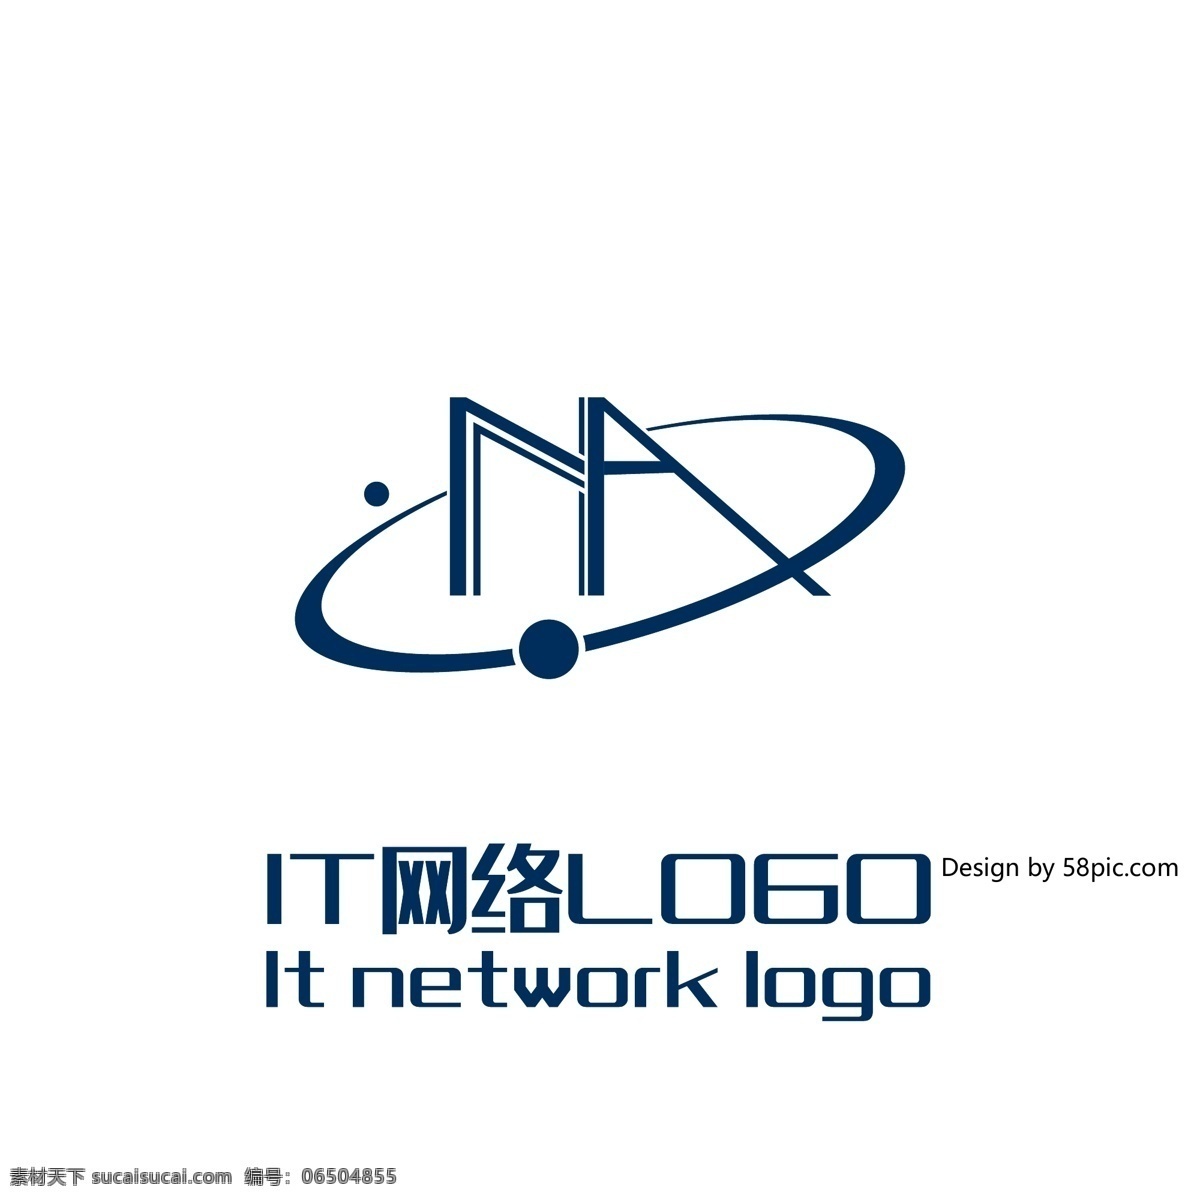 原创 创意 简约 na 字 科技 it 网络 logo 可商用 n a 字体设计 标志